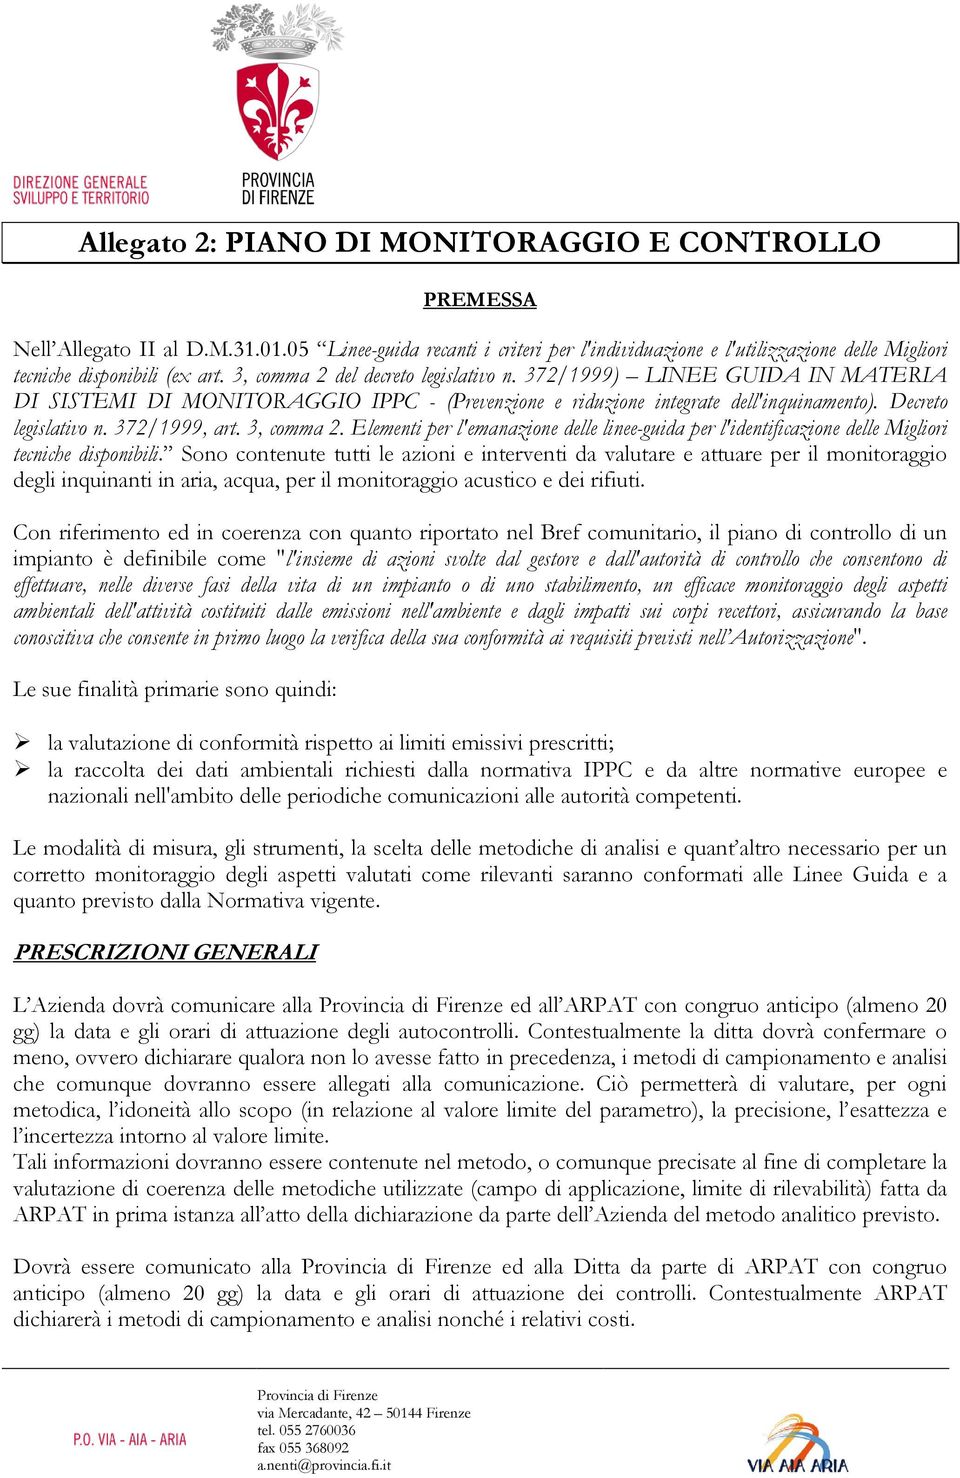 372/1999) LINEE GUIDA IN MATERIA DI SISTEMI DI MONITORAGGIO IPPC - (Prevenzione e riduzione integrate dell'inquinamento). Decreto legislativo n. 372/1999, art. 3, comma 2.